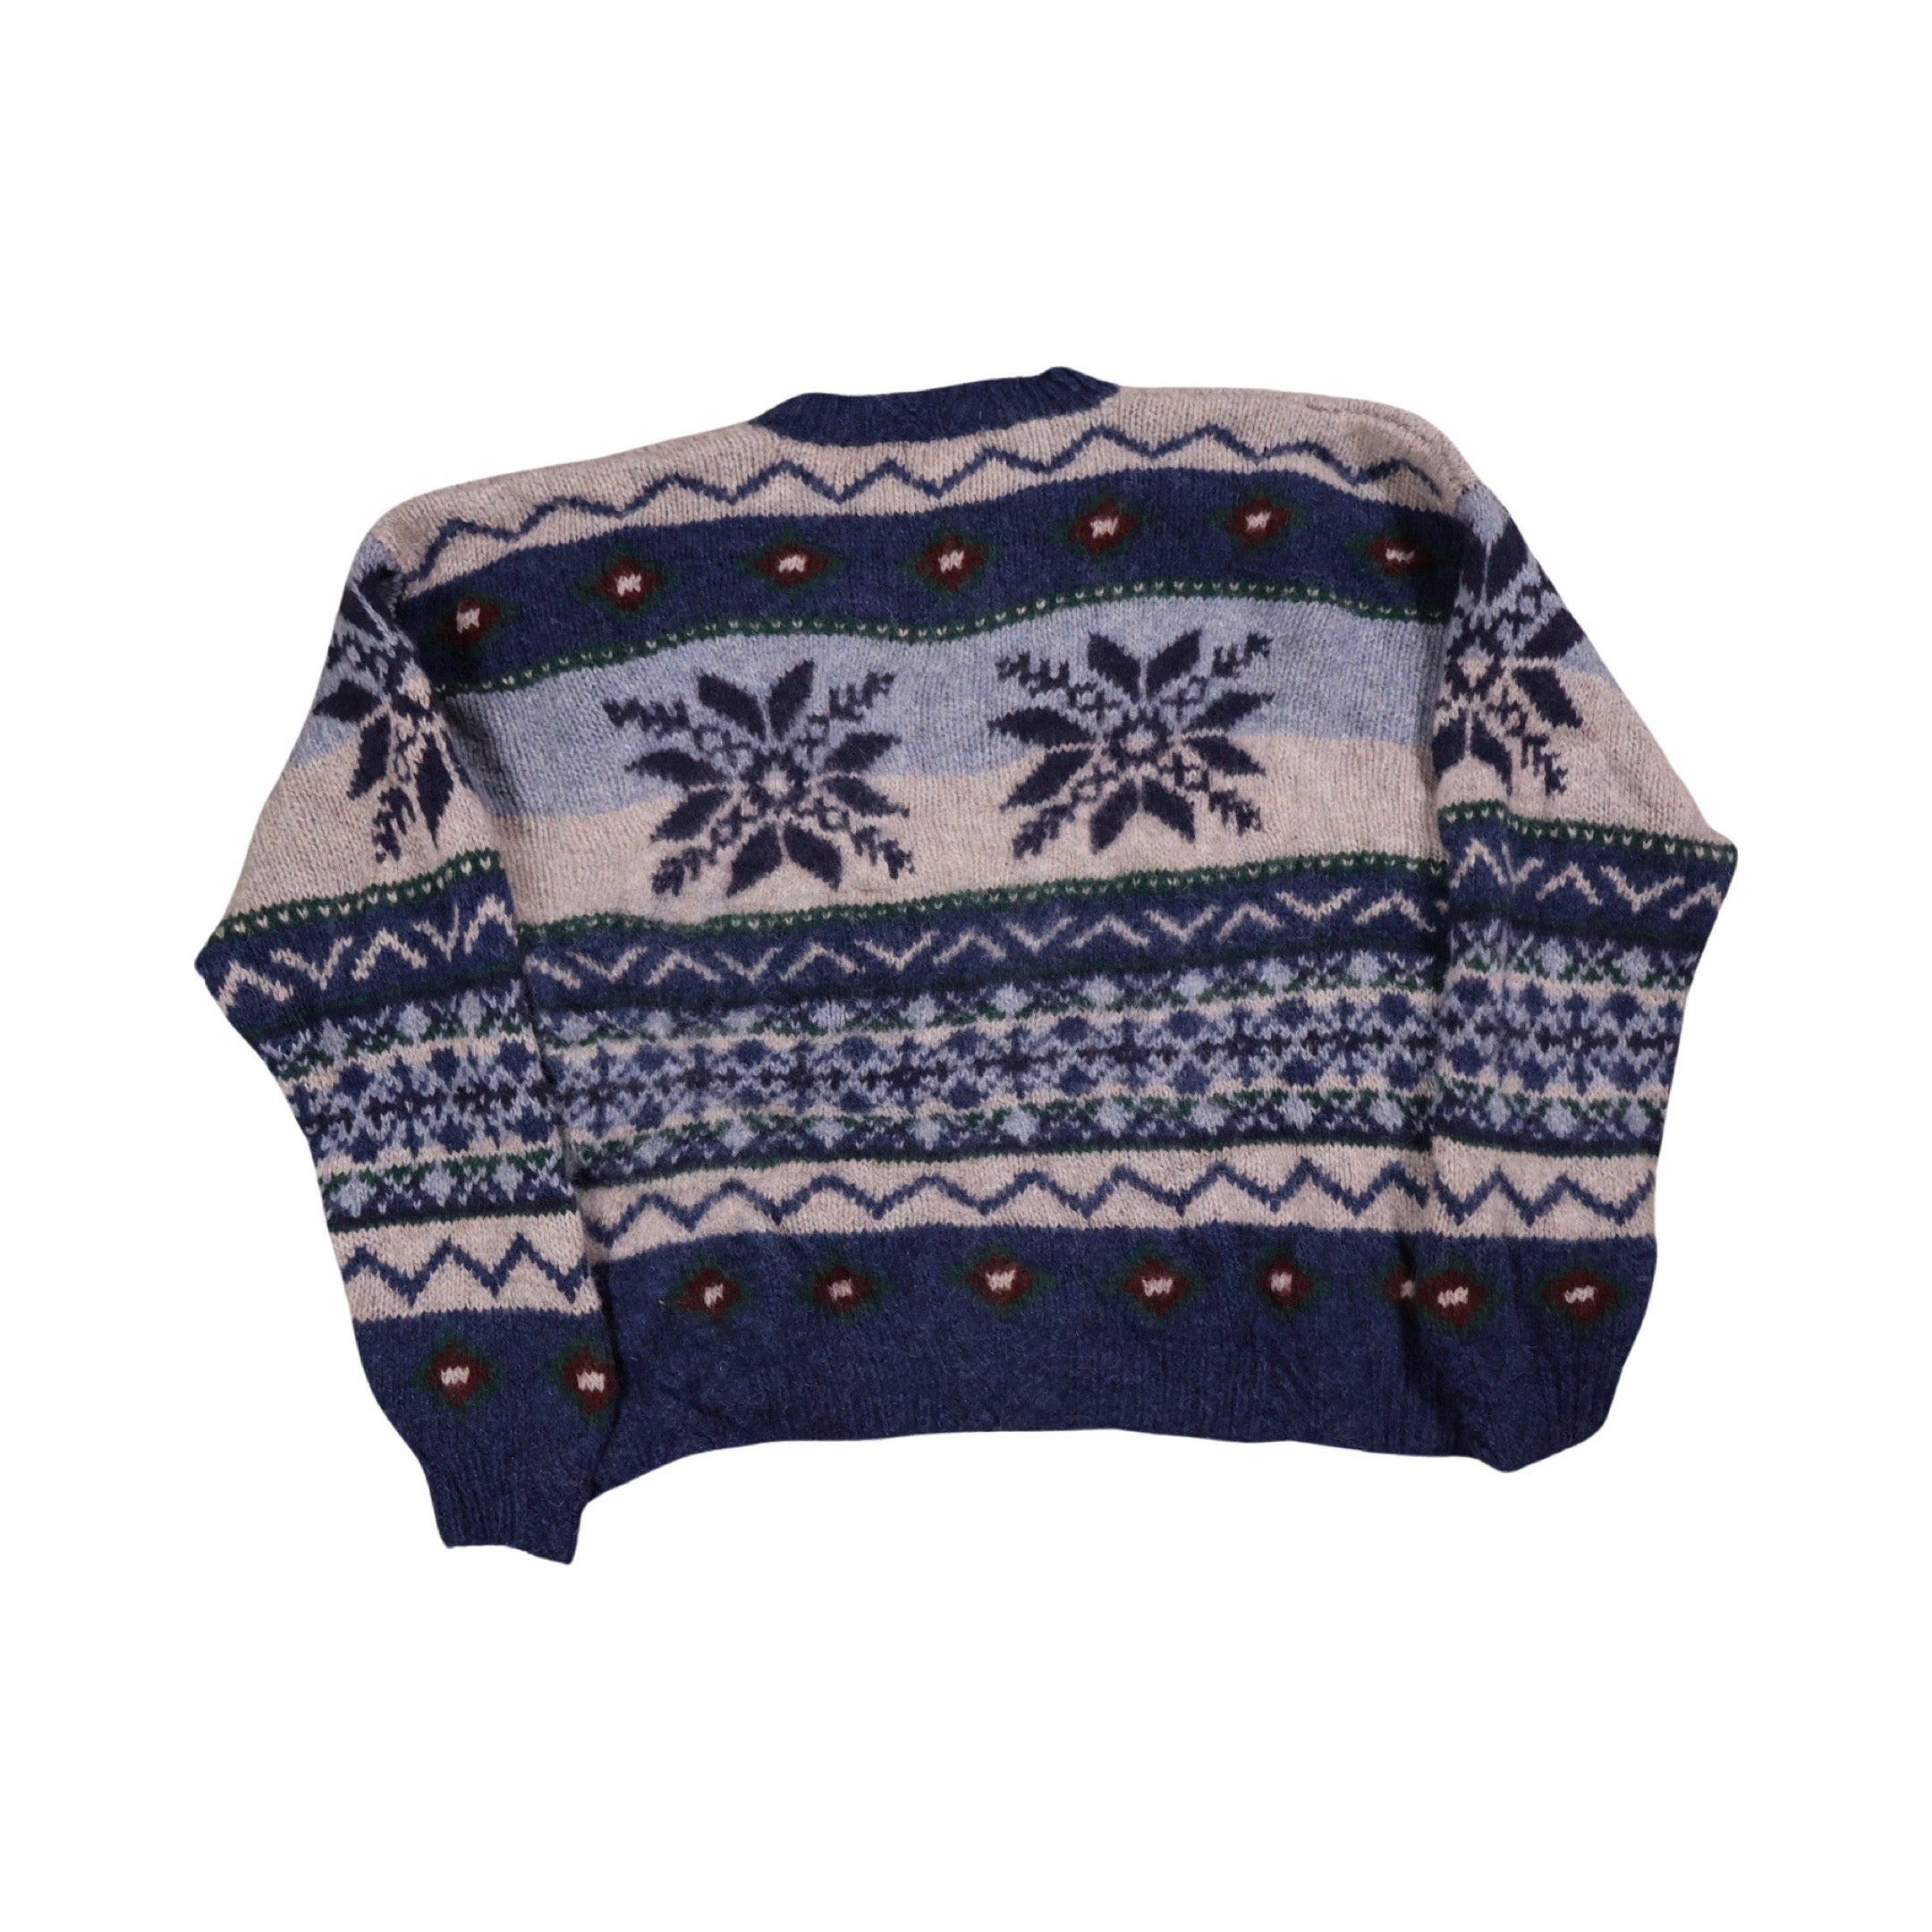 Woolrich Reindeer Knit Sweater (XL)